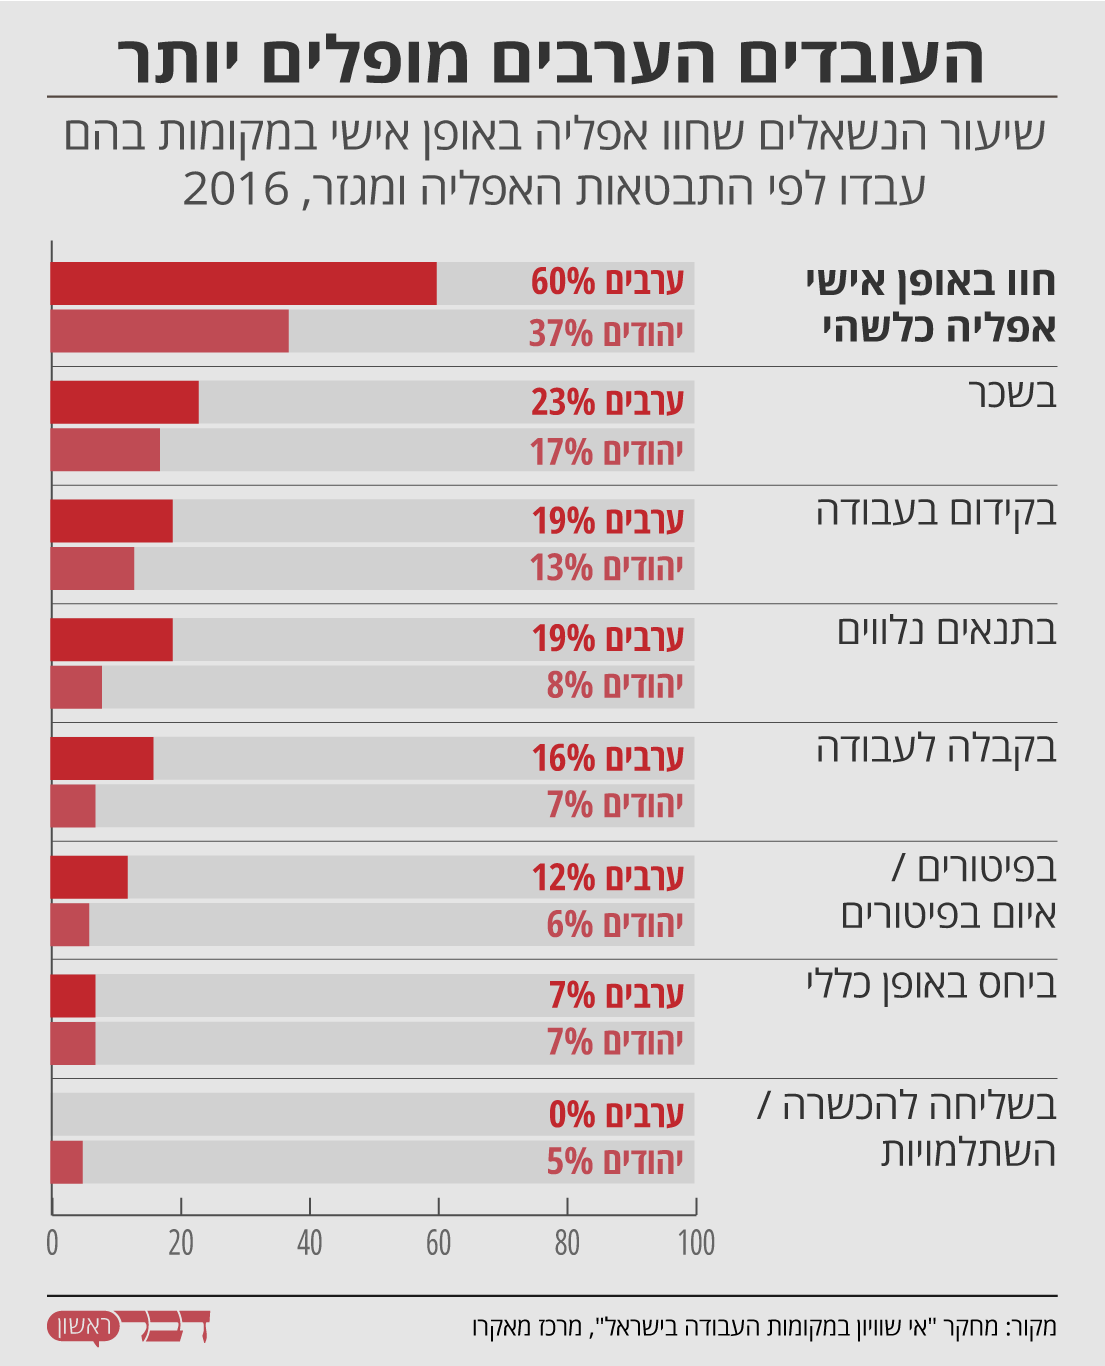 נתונים: מחקר &quot;אי שוויון במקומות העבודה בישראל&quot;, מרכז מאקרו. גרפיקה: דבר ראשון